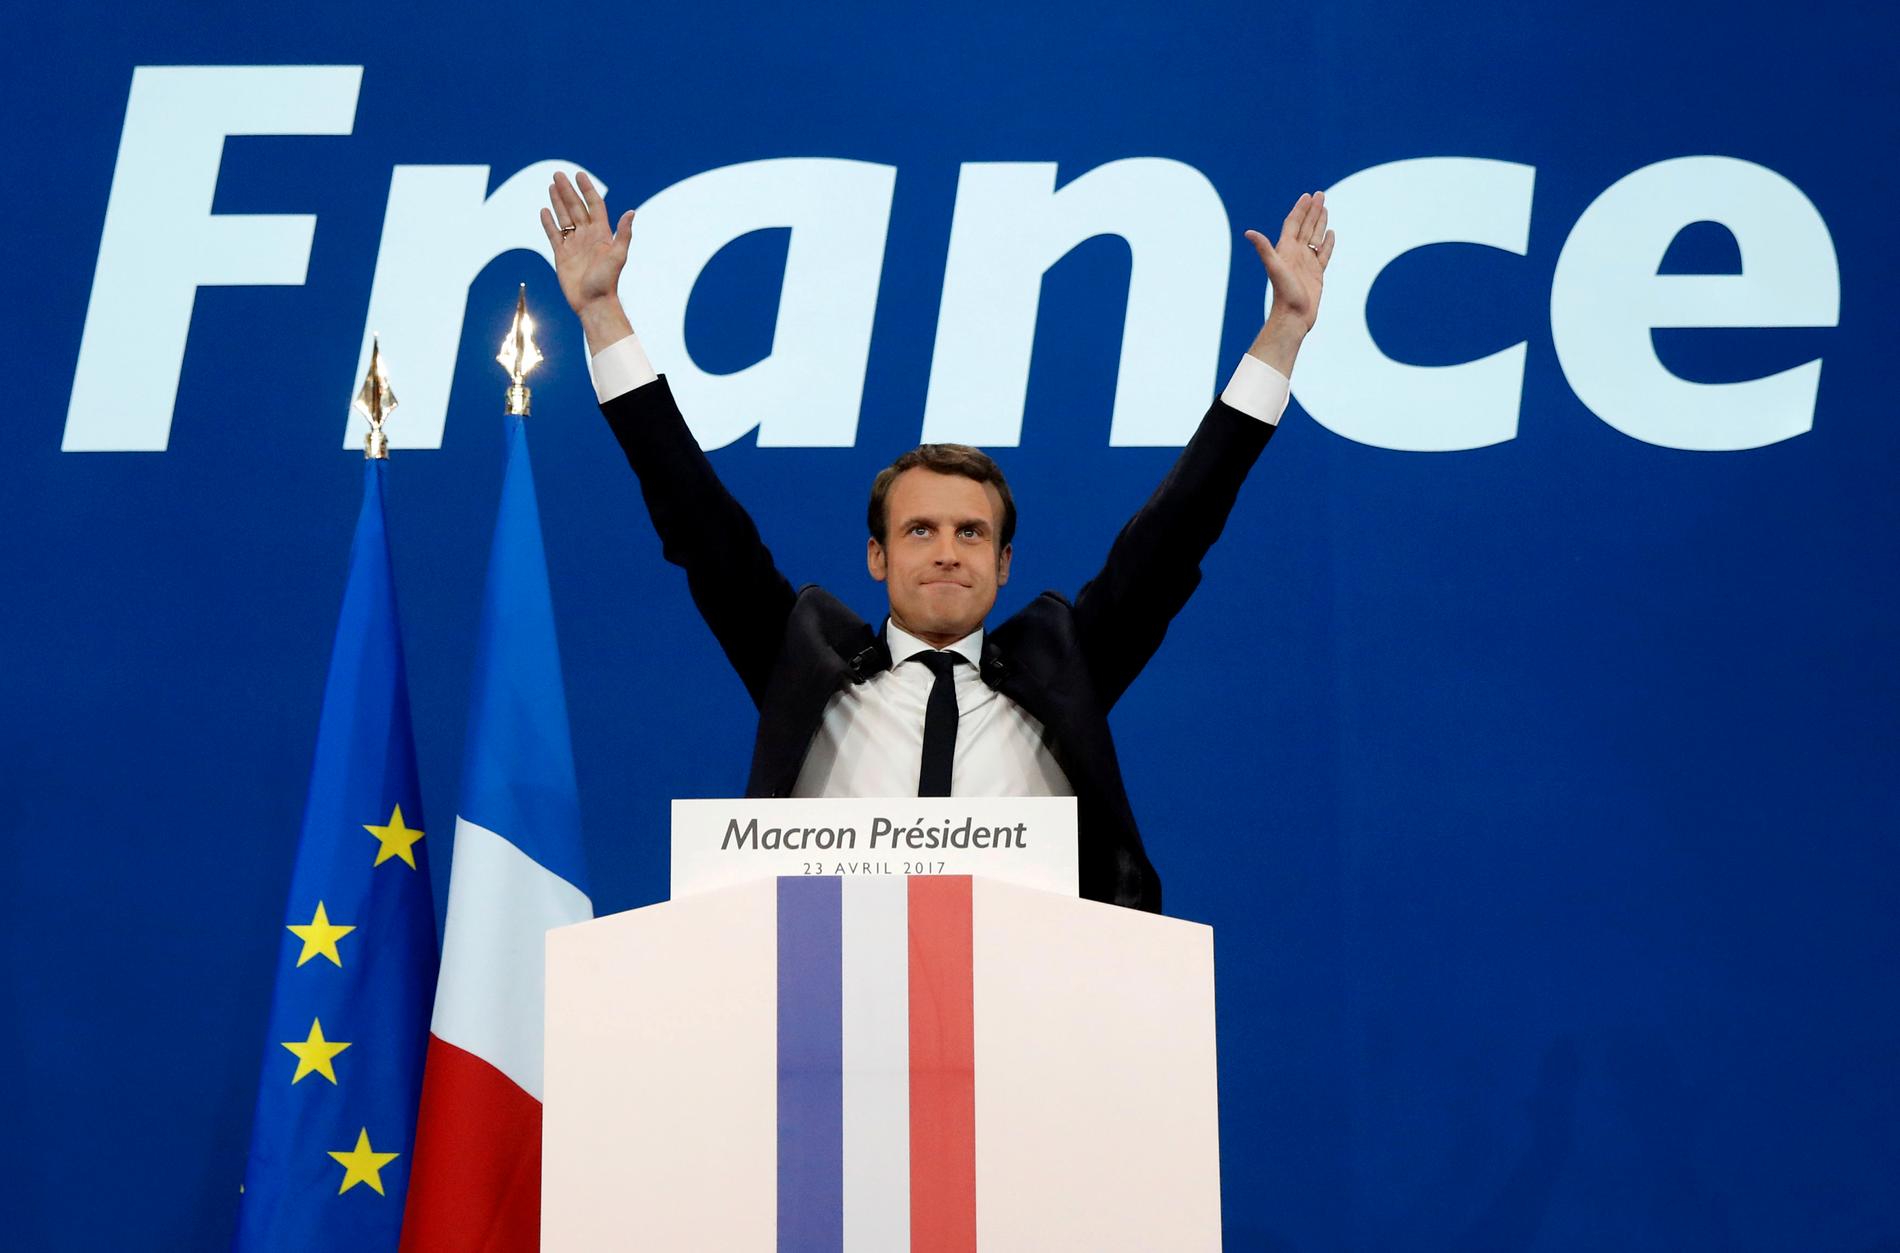 FØRSTE HINDER: Liberale Emmanuel Macron er klar favoritt til å bli ny president i Frankrike, etter han vann første runde i det franske presidentvalet. Men utan fleirtal i nasjonalforsamlinga vil han få problem med å få gjort noko, skriv BT på leiarplass.